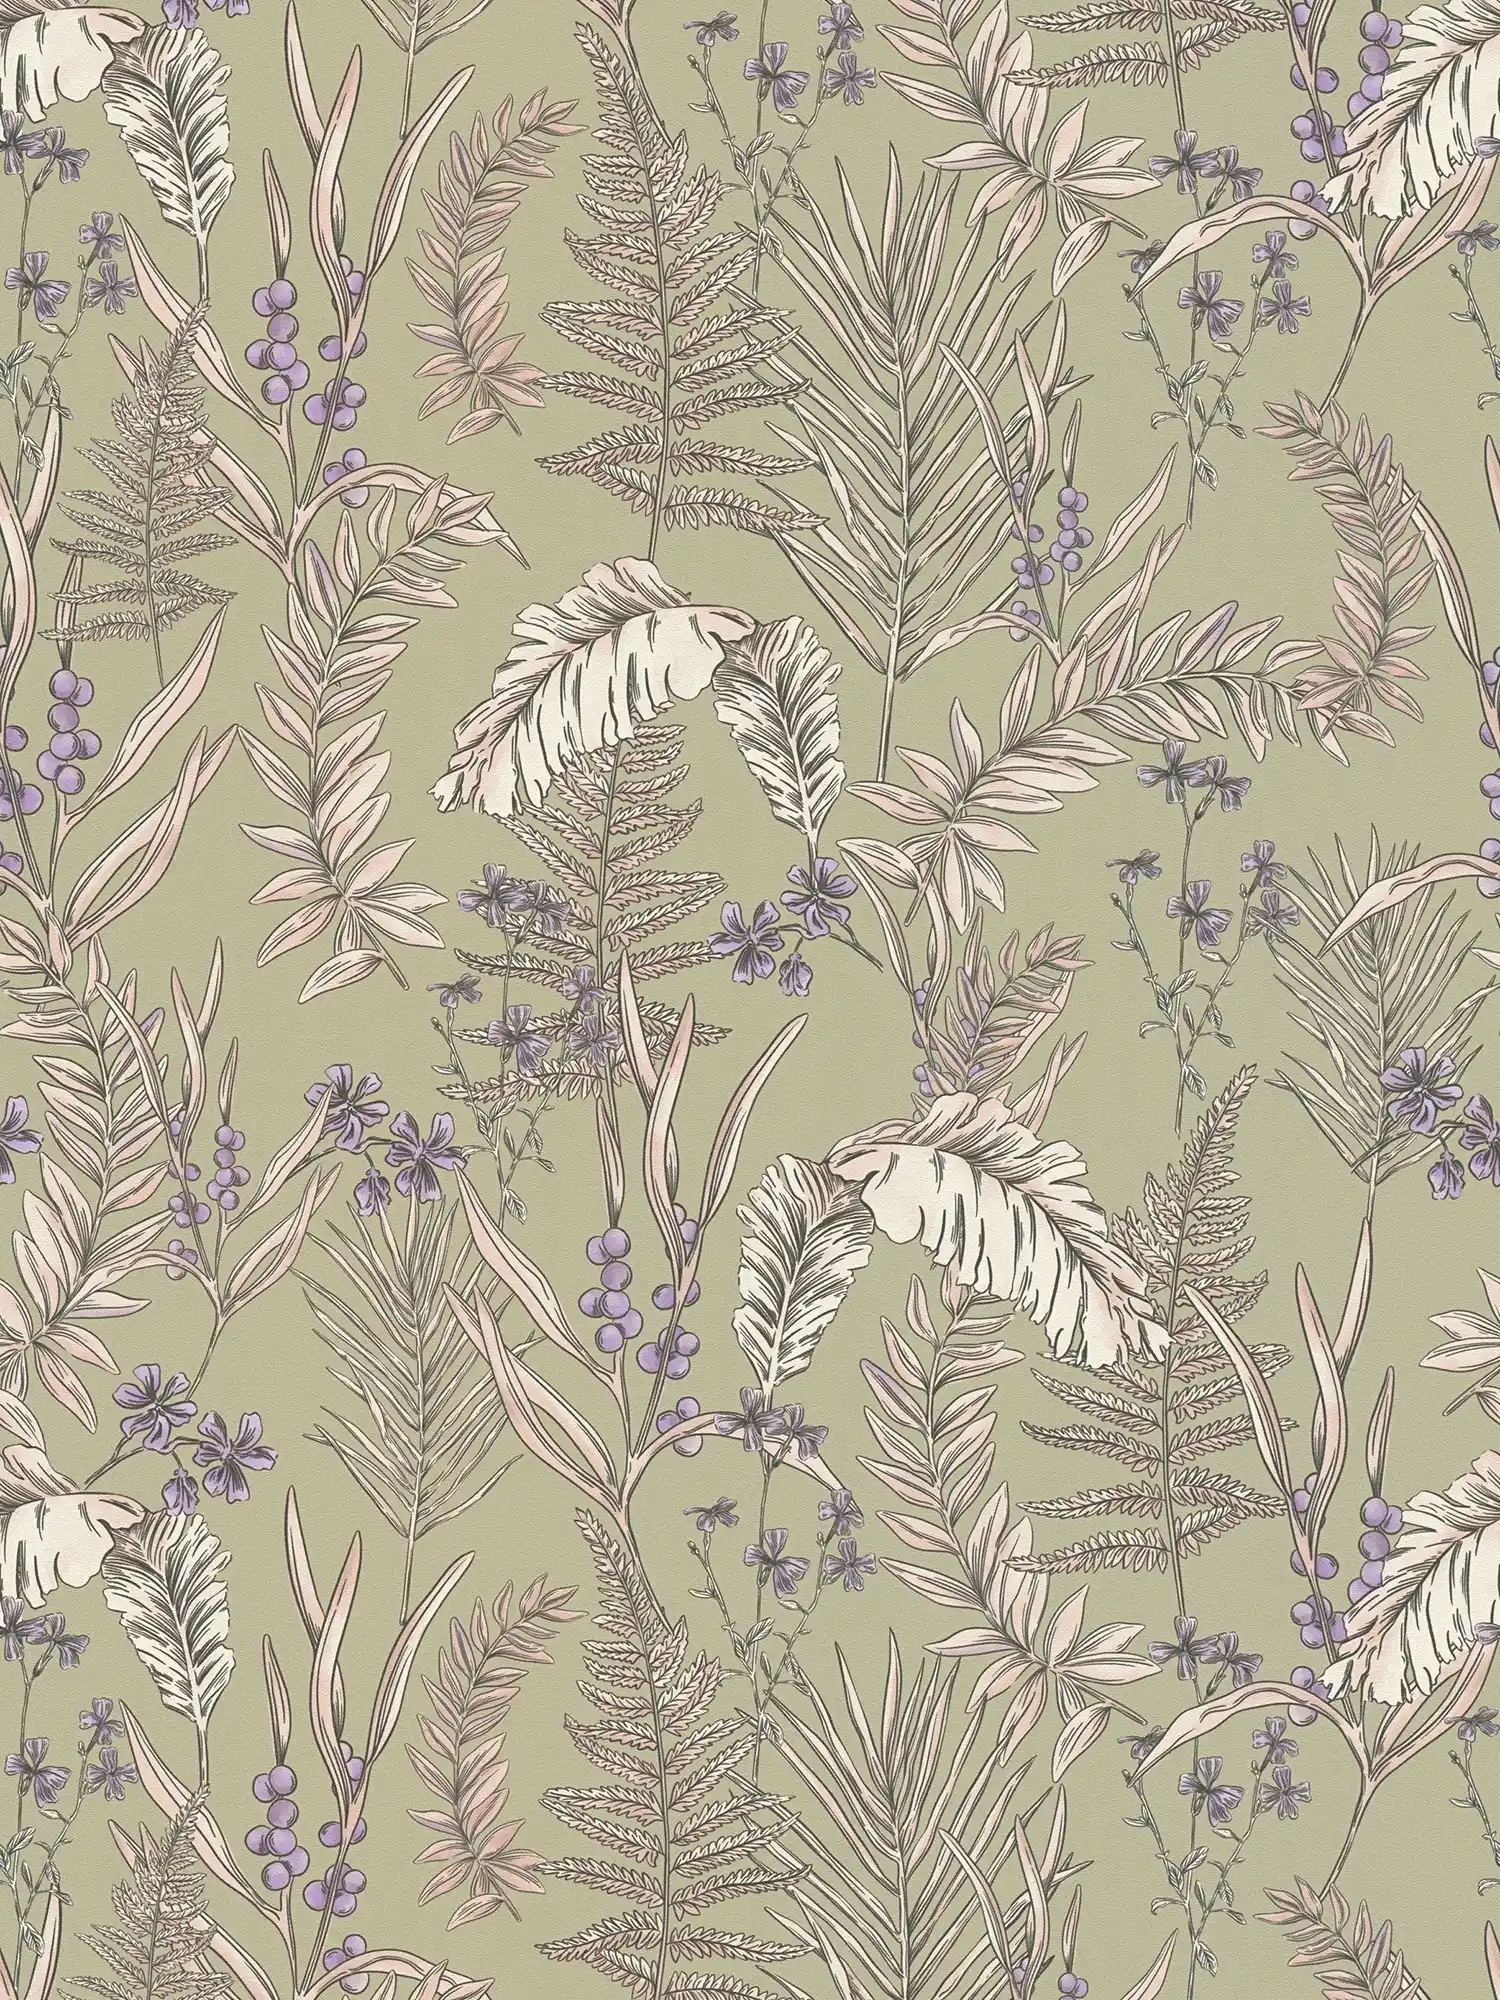 Moderne Tapete im floralen Stil mit Blättern & Blüten strukturiert – Grau, Creme, Lila
